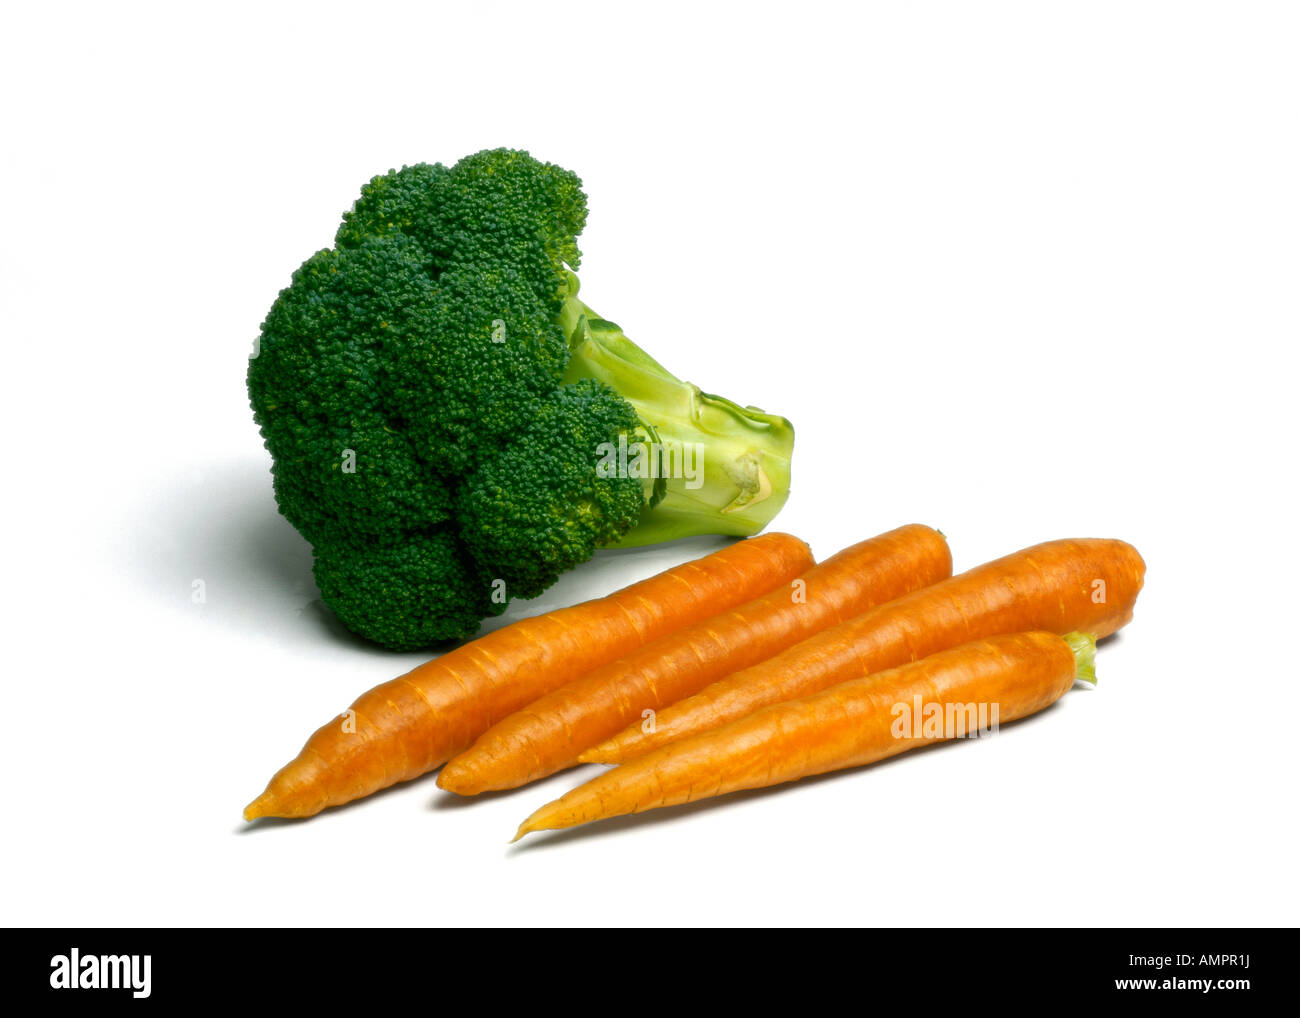 Le brocoli et les carottes Banque D'Images